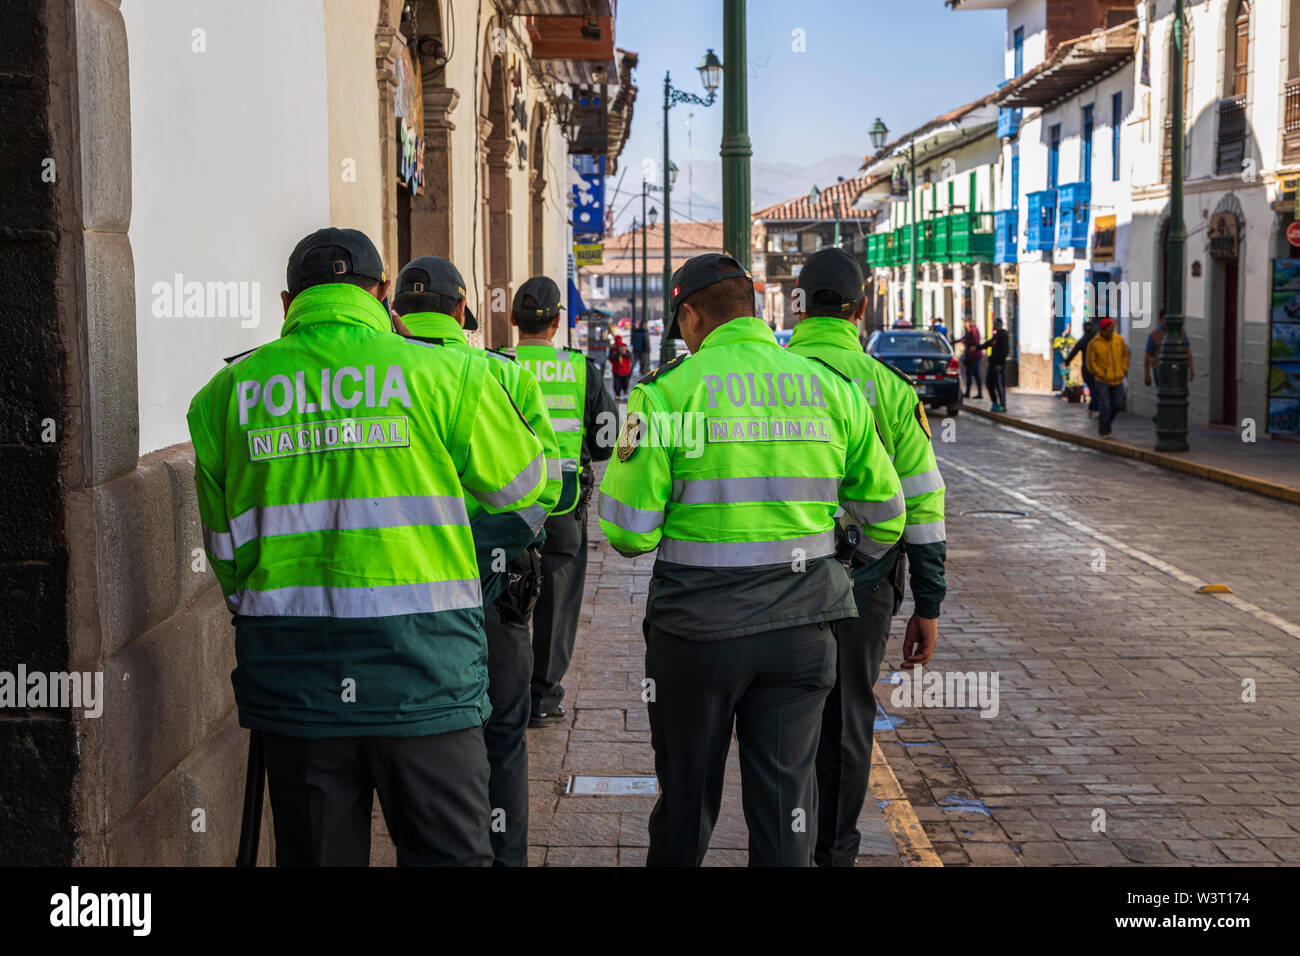 Police touristique en haute viz jackets dans Cusco, Pérou, Amérique du Sud Banque D'Images